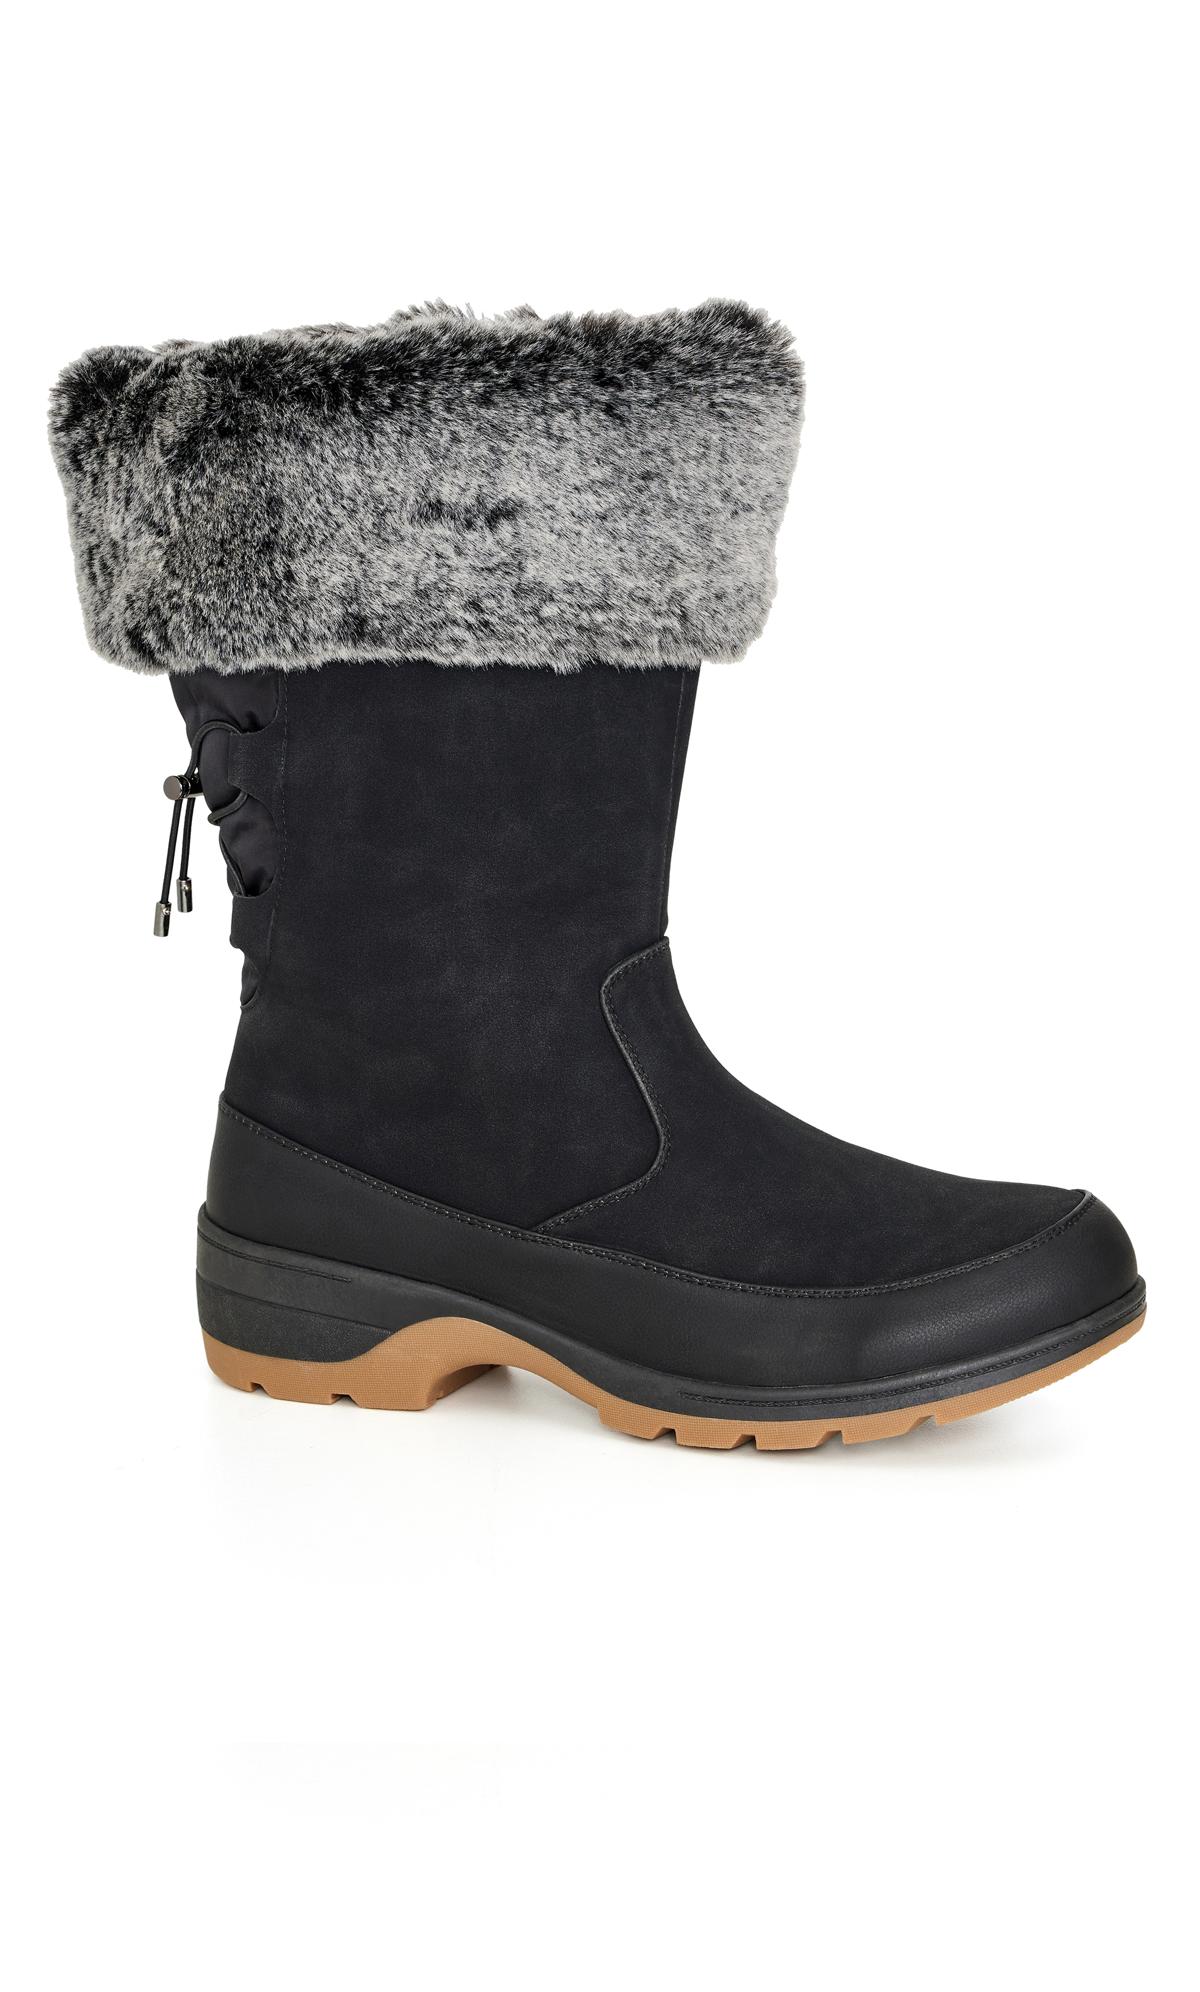 Avenue WIDE FIT Black Faux Fur Lined Snow Boots 2